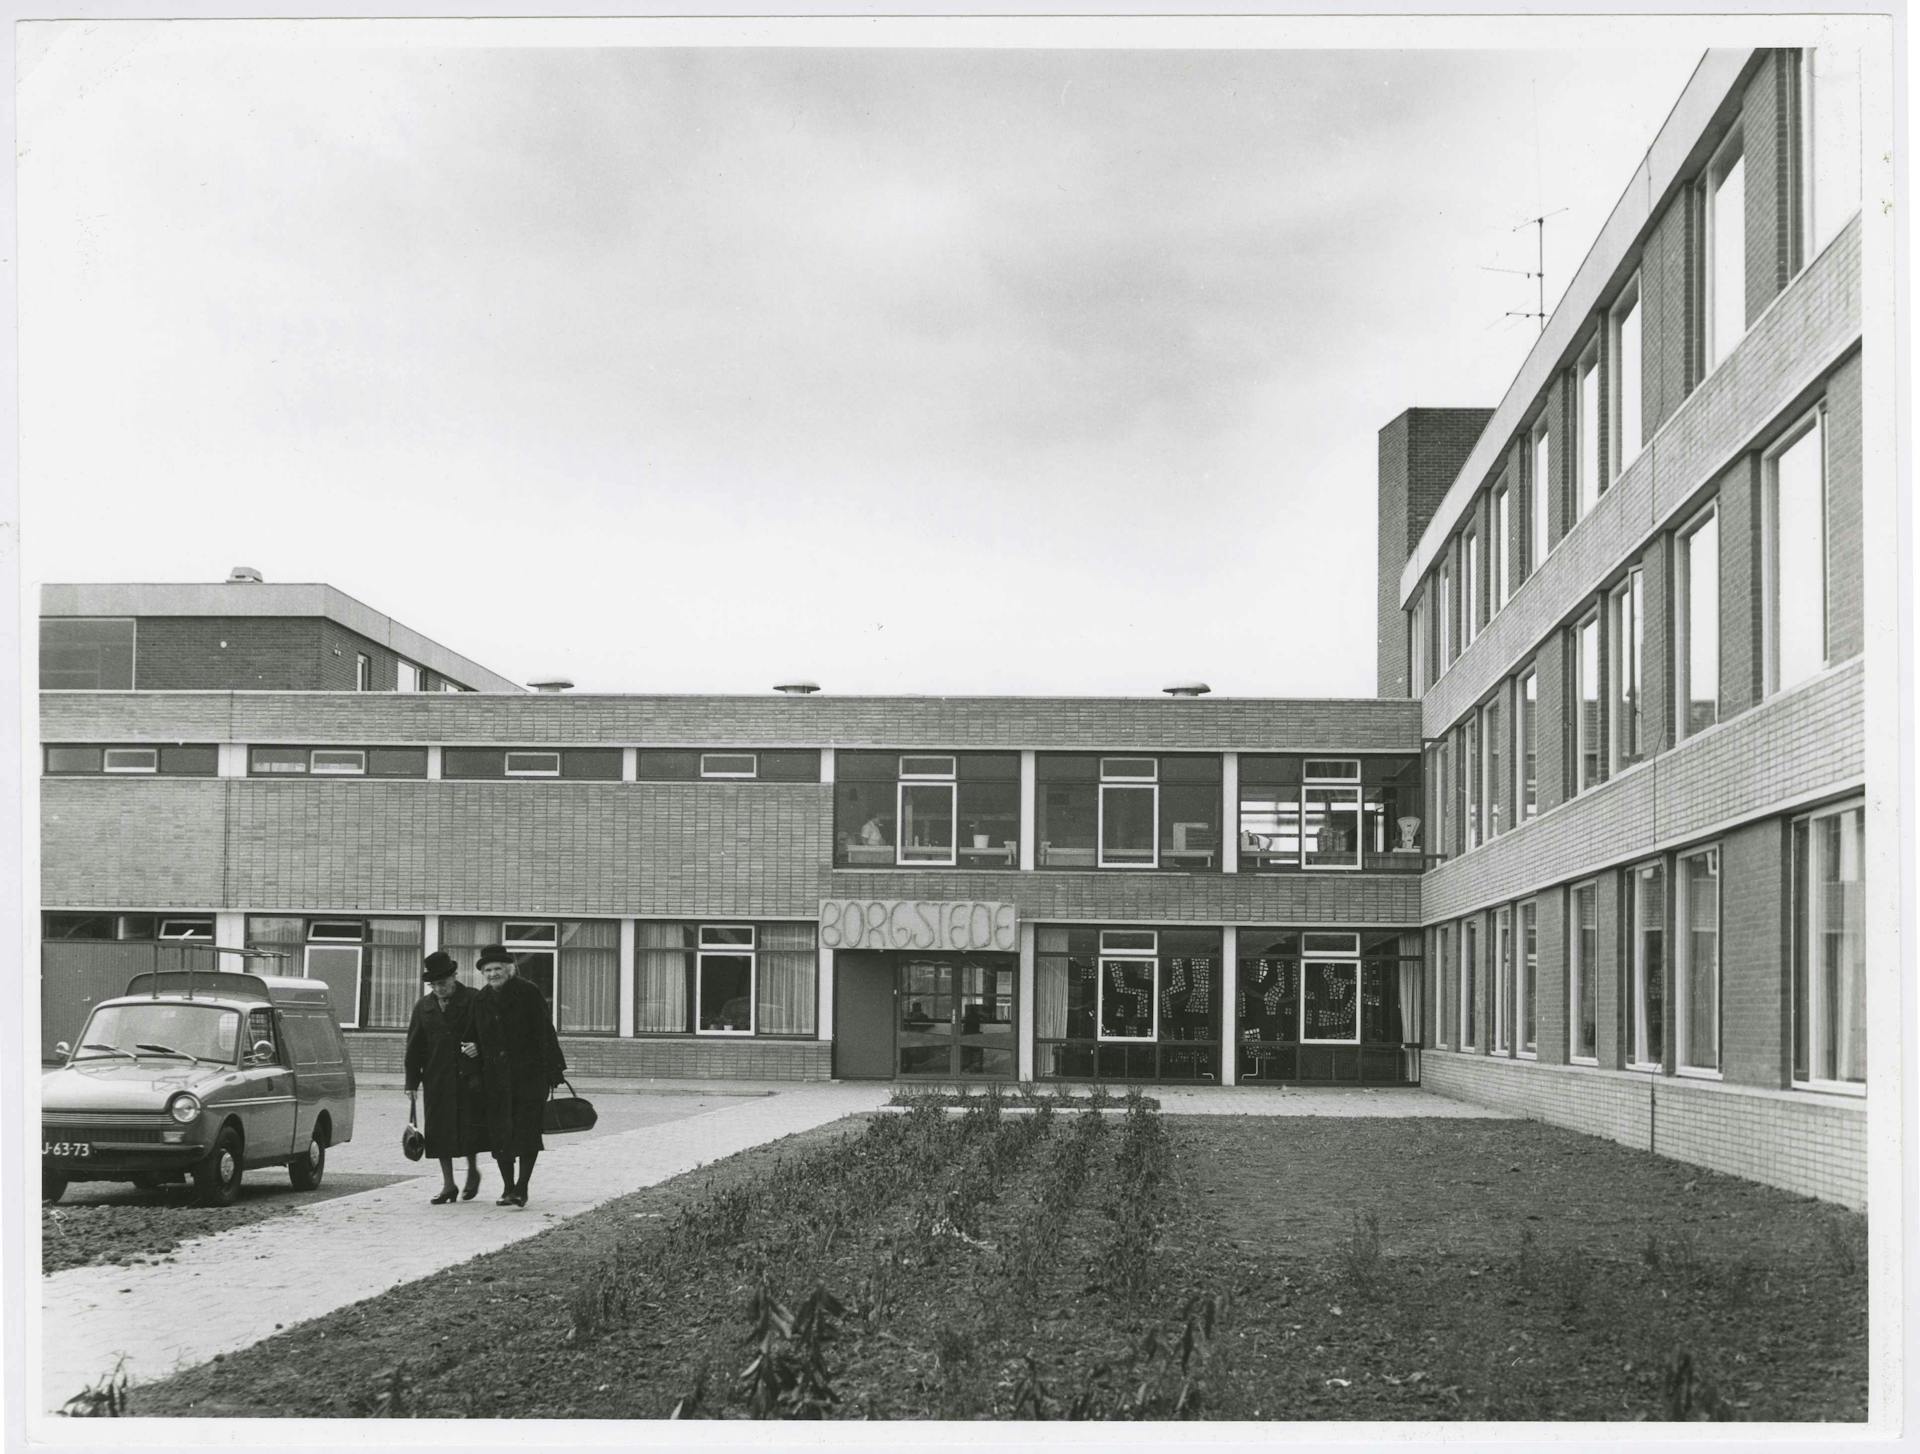  W. Wissing, Bejaardentehuis Borgstede, Barendrecht, 1957-1974. Opdrachtgever: Nederlandse Centrale voor Huisvesting van Bejaarden. Collectie Het Nieuwe Instituut, WISS ph87